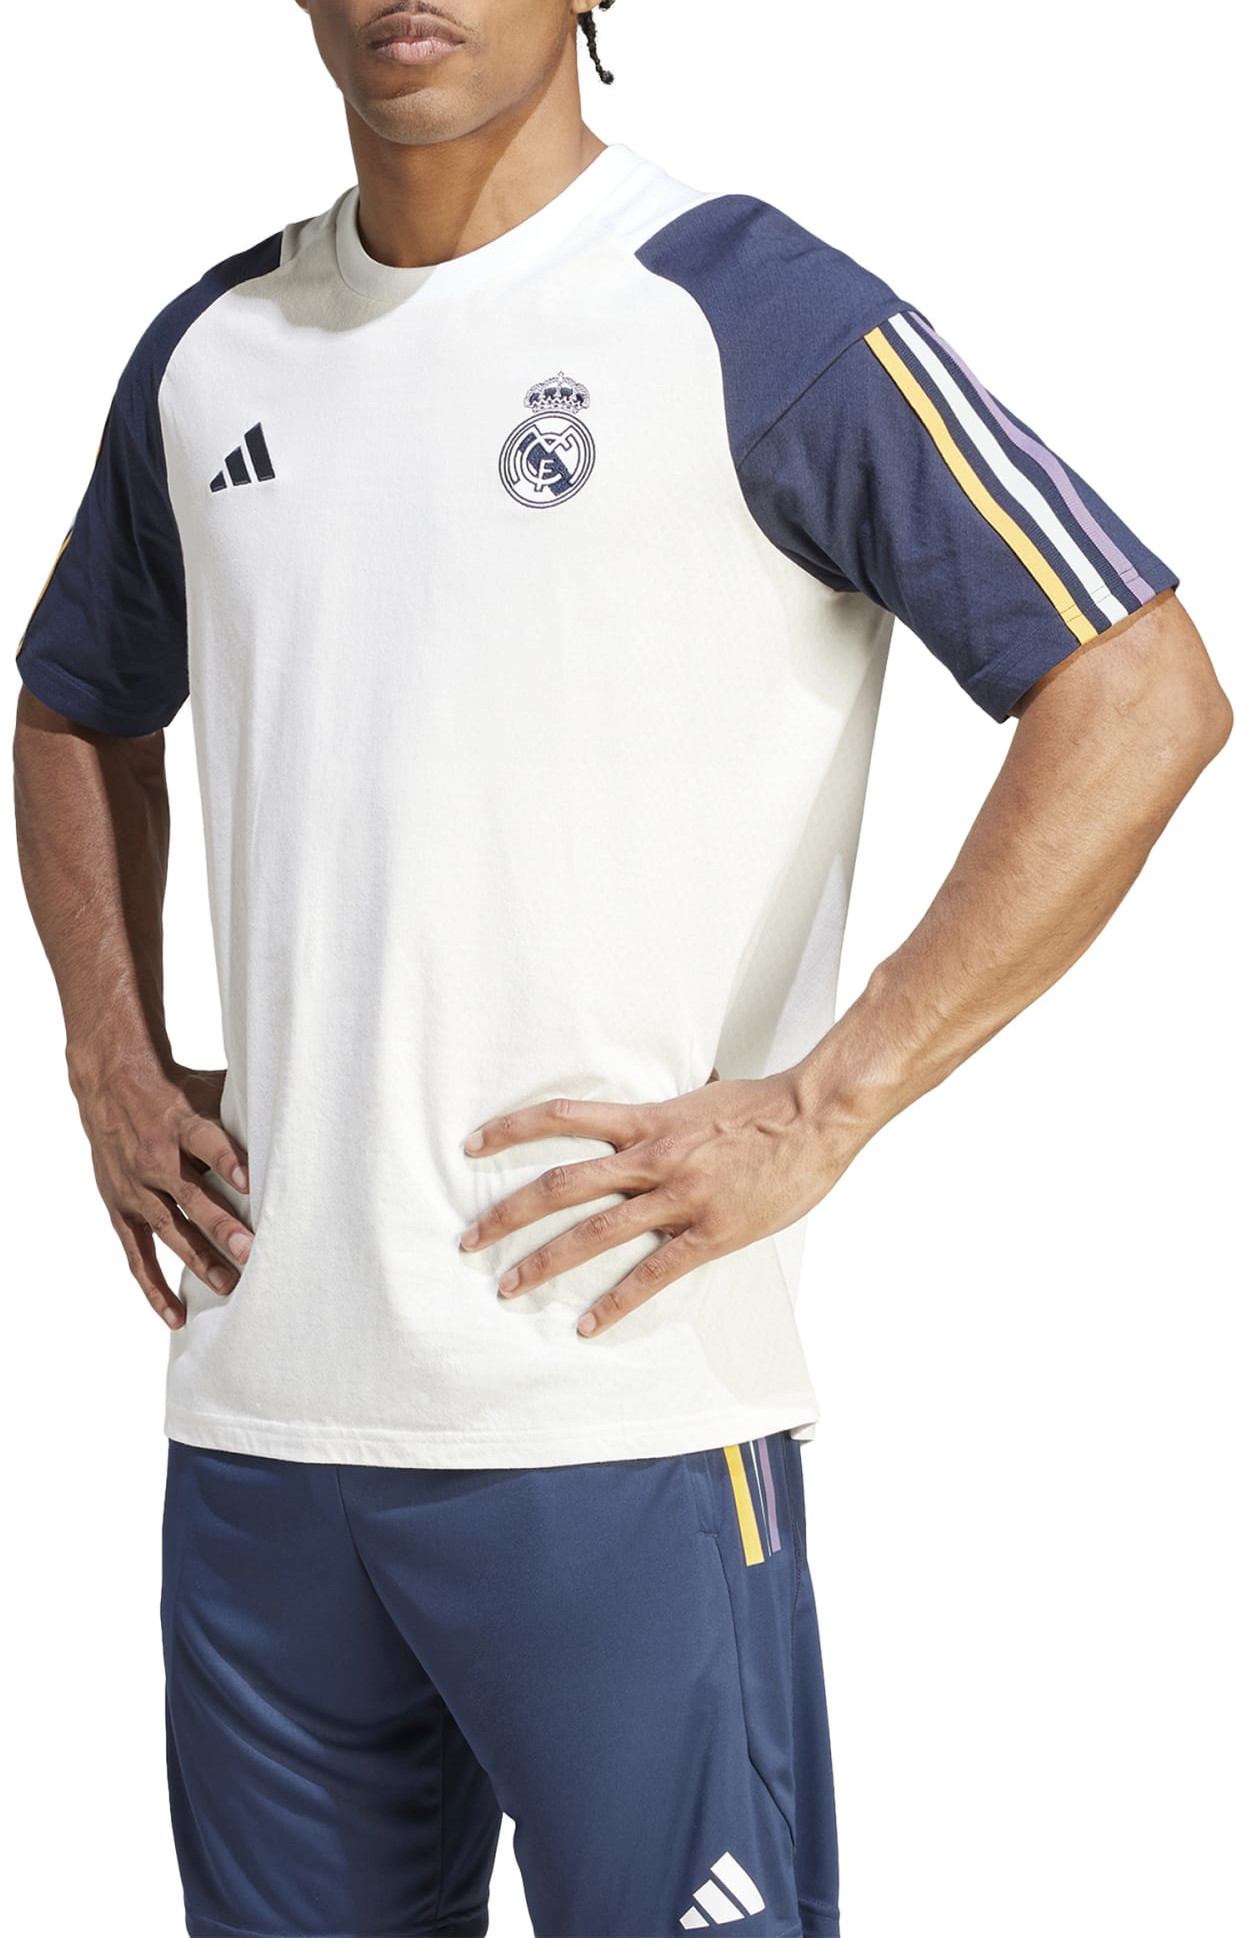 Mens Adidas Football Real Madrid Tee